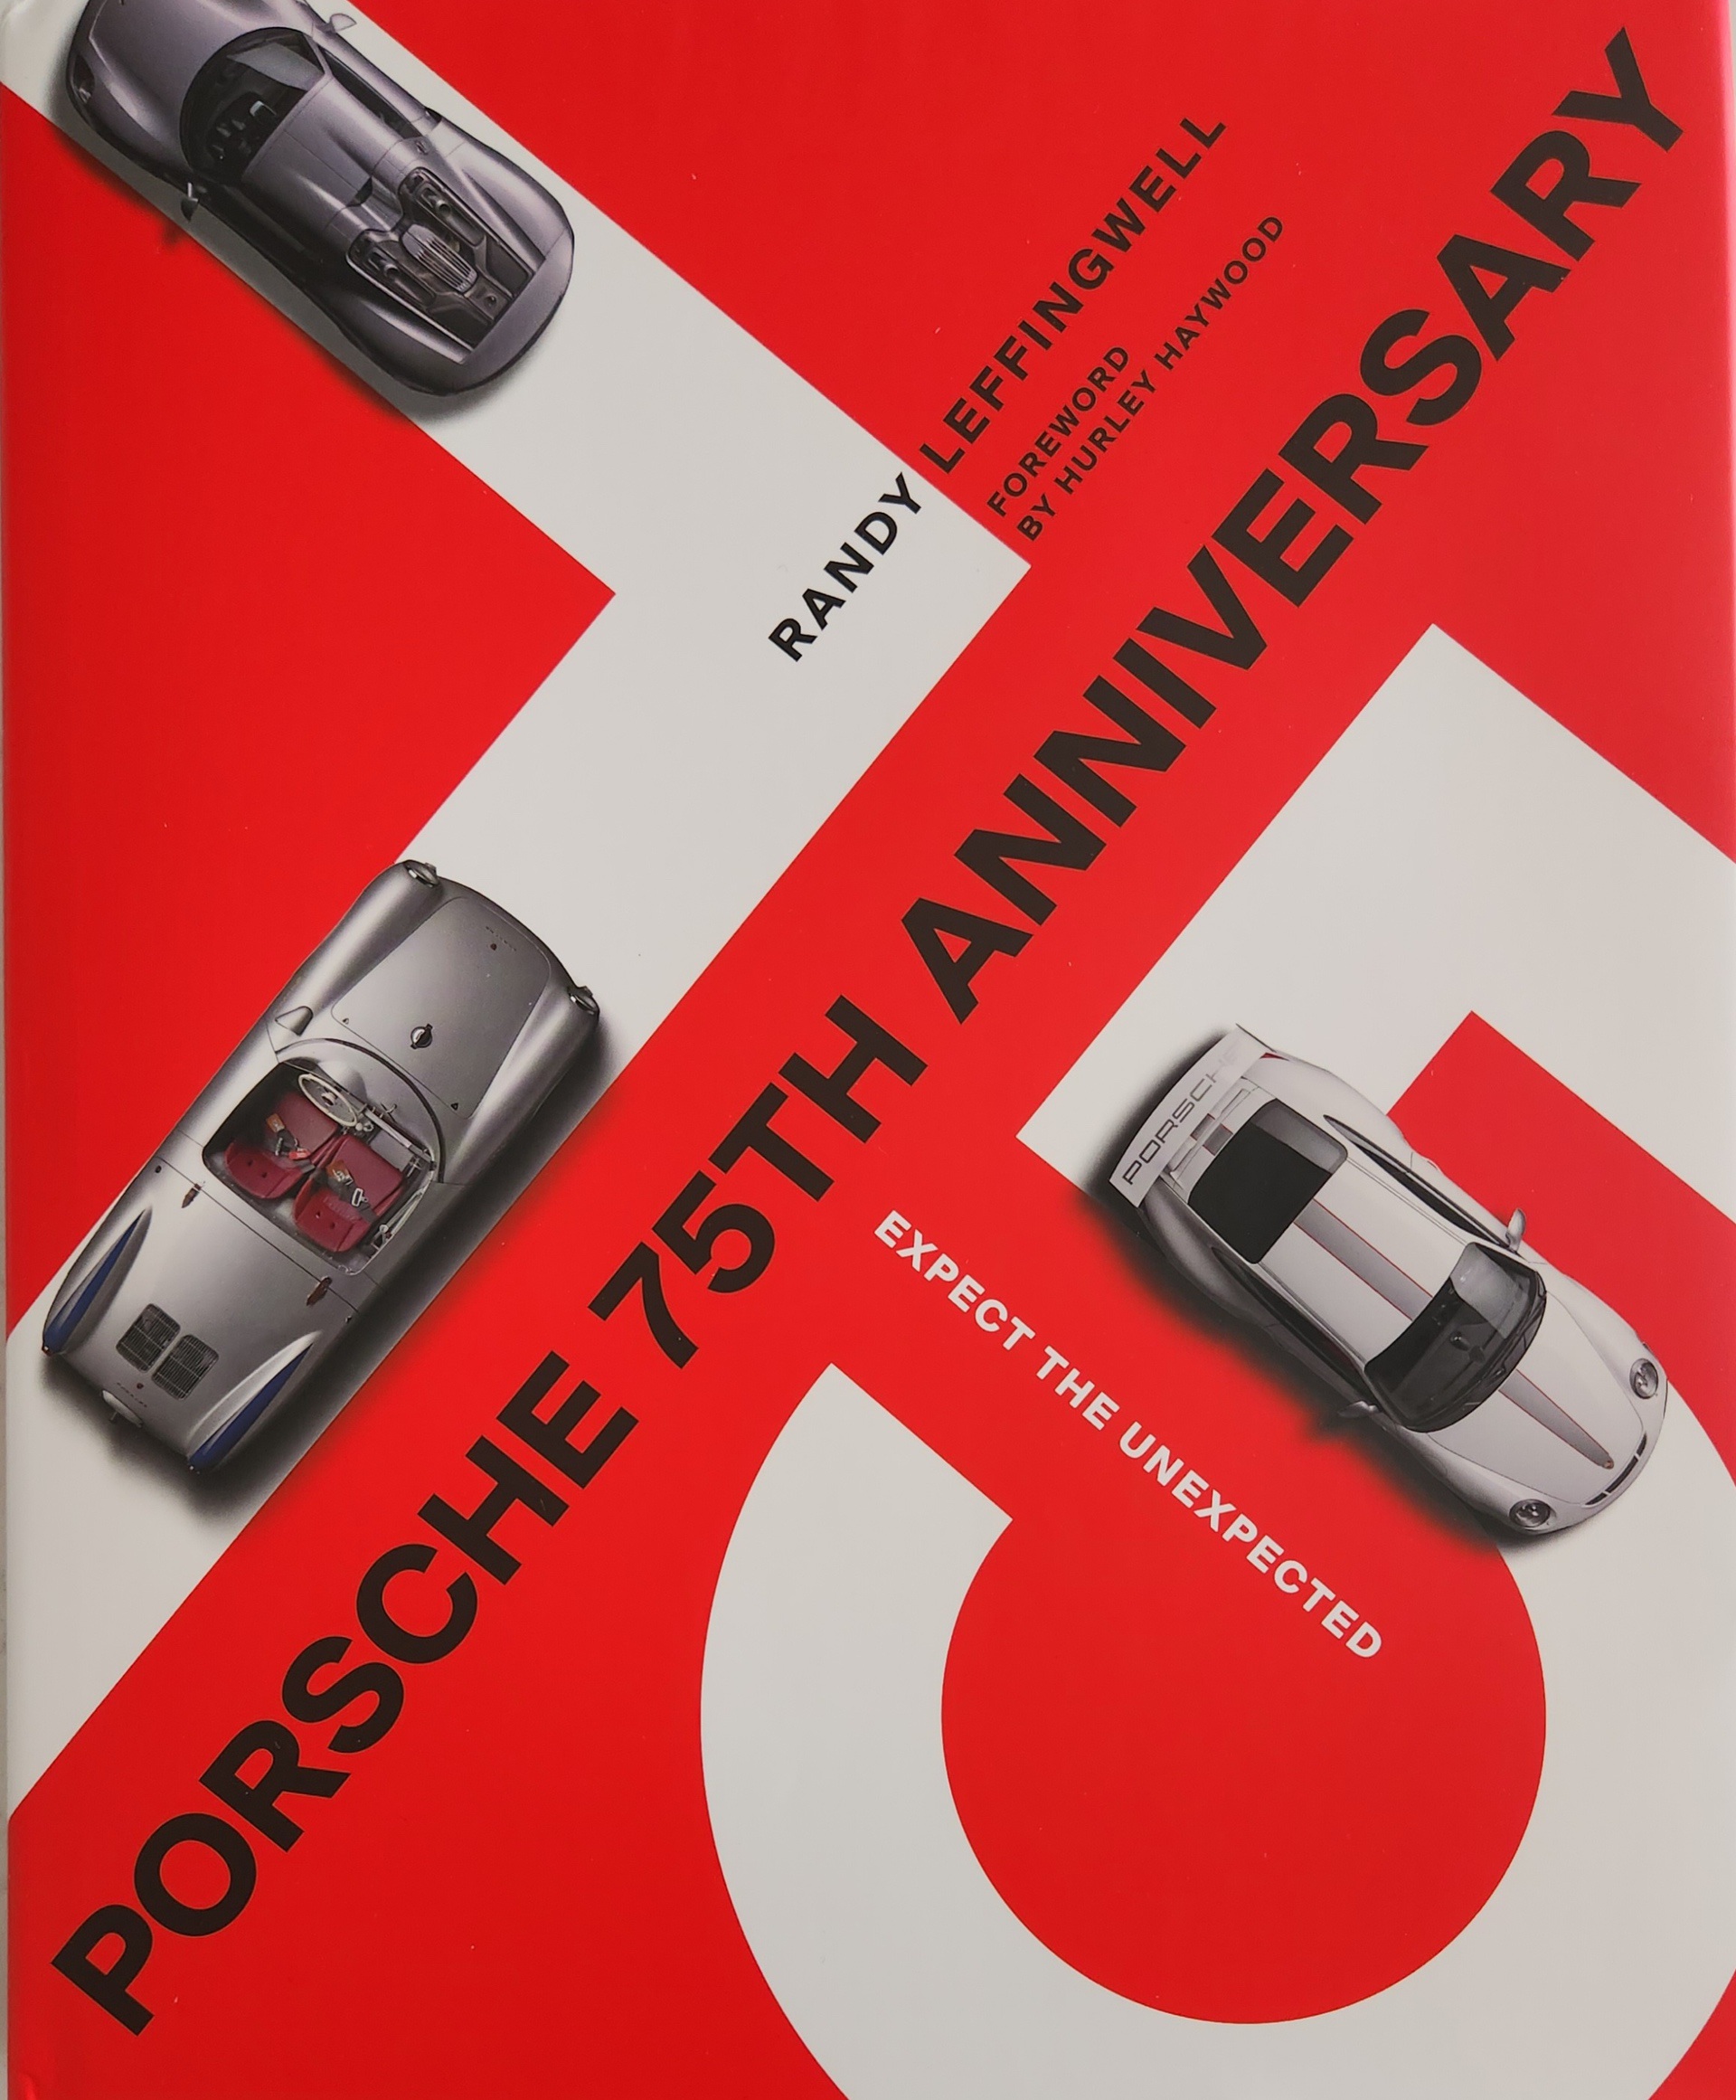 Dust jacket of Porsche 75th Anniversary book